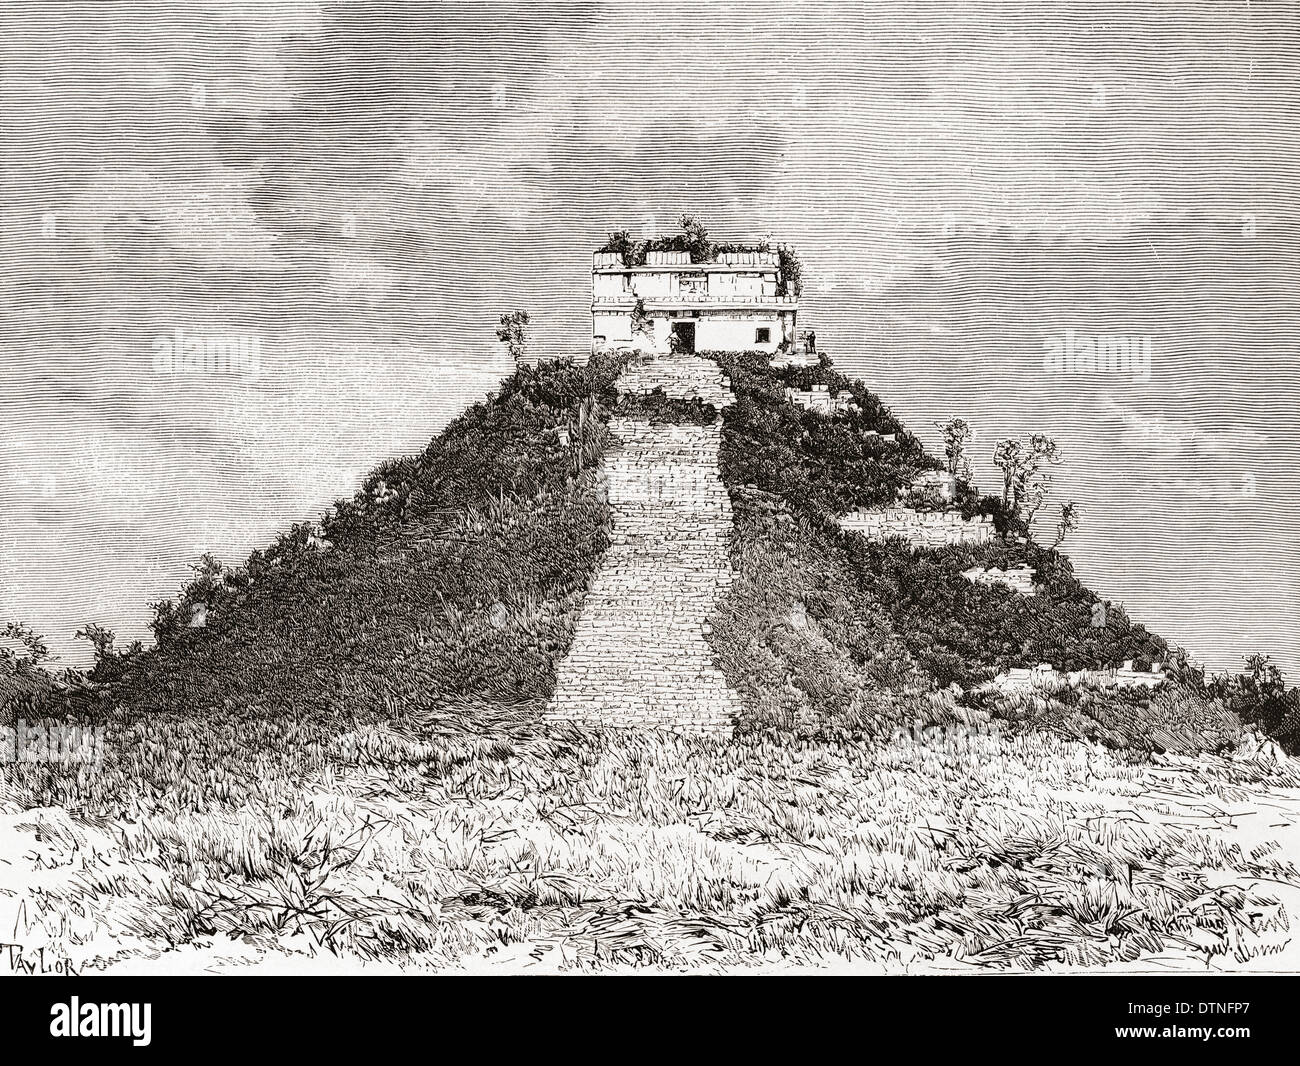 Chichen Itza, Yucatán, Mexico. El Castillo aka Kukulkan's pyramid, in the 19th century before its restoration. Stock Photo